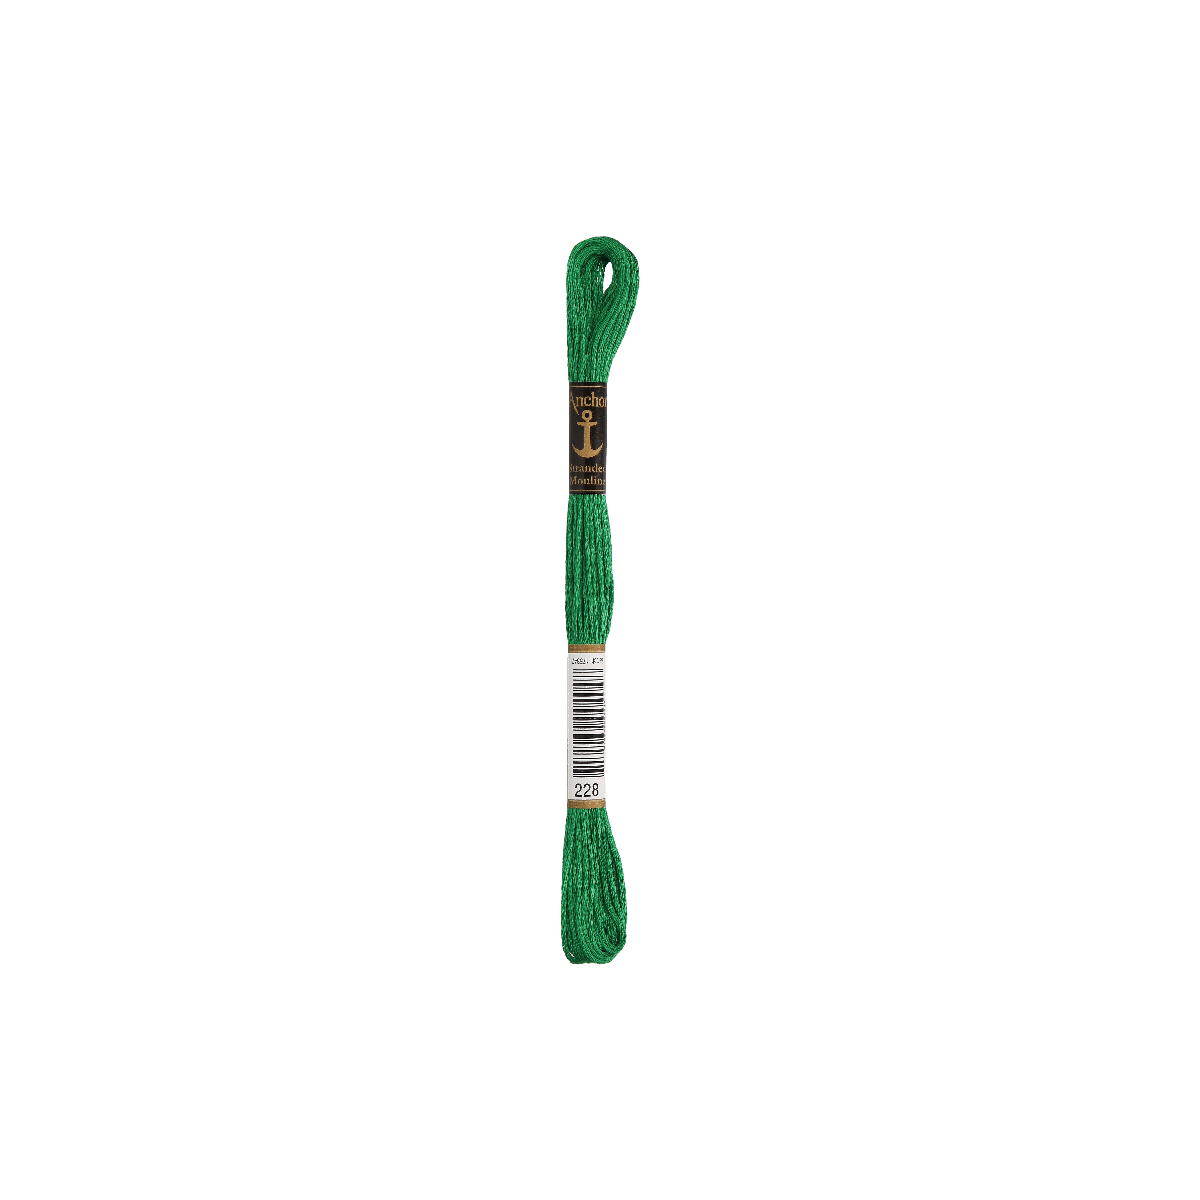 Anchor Sticktwist 8m, groen, katoen, kleur 228, 6-draads